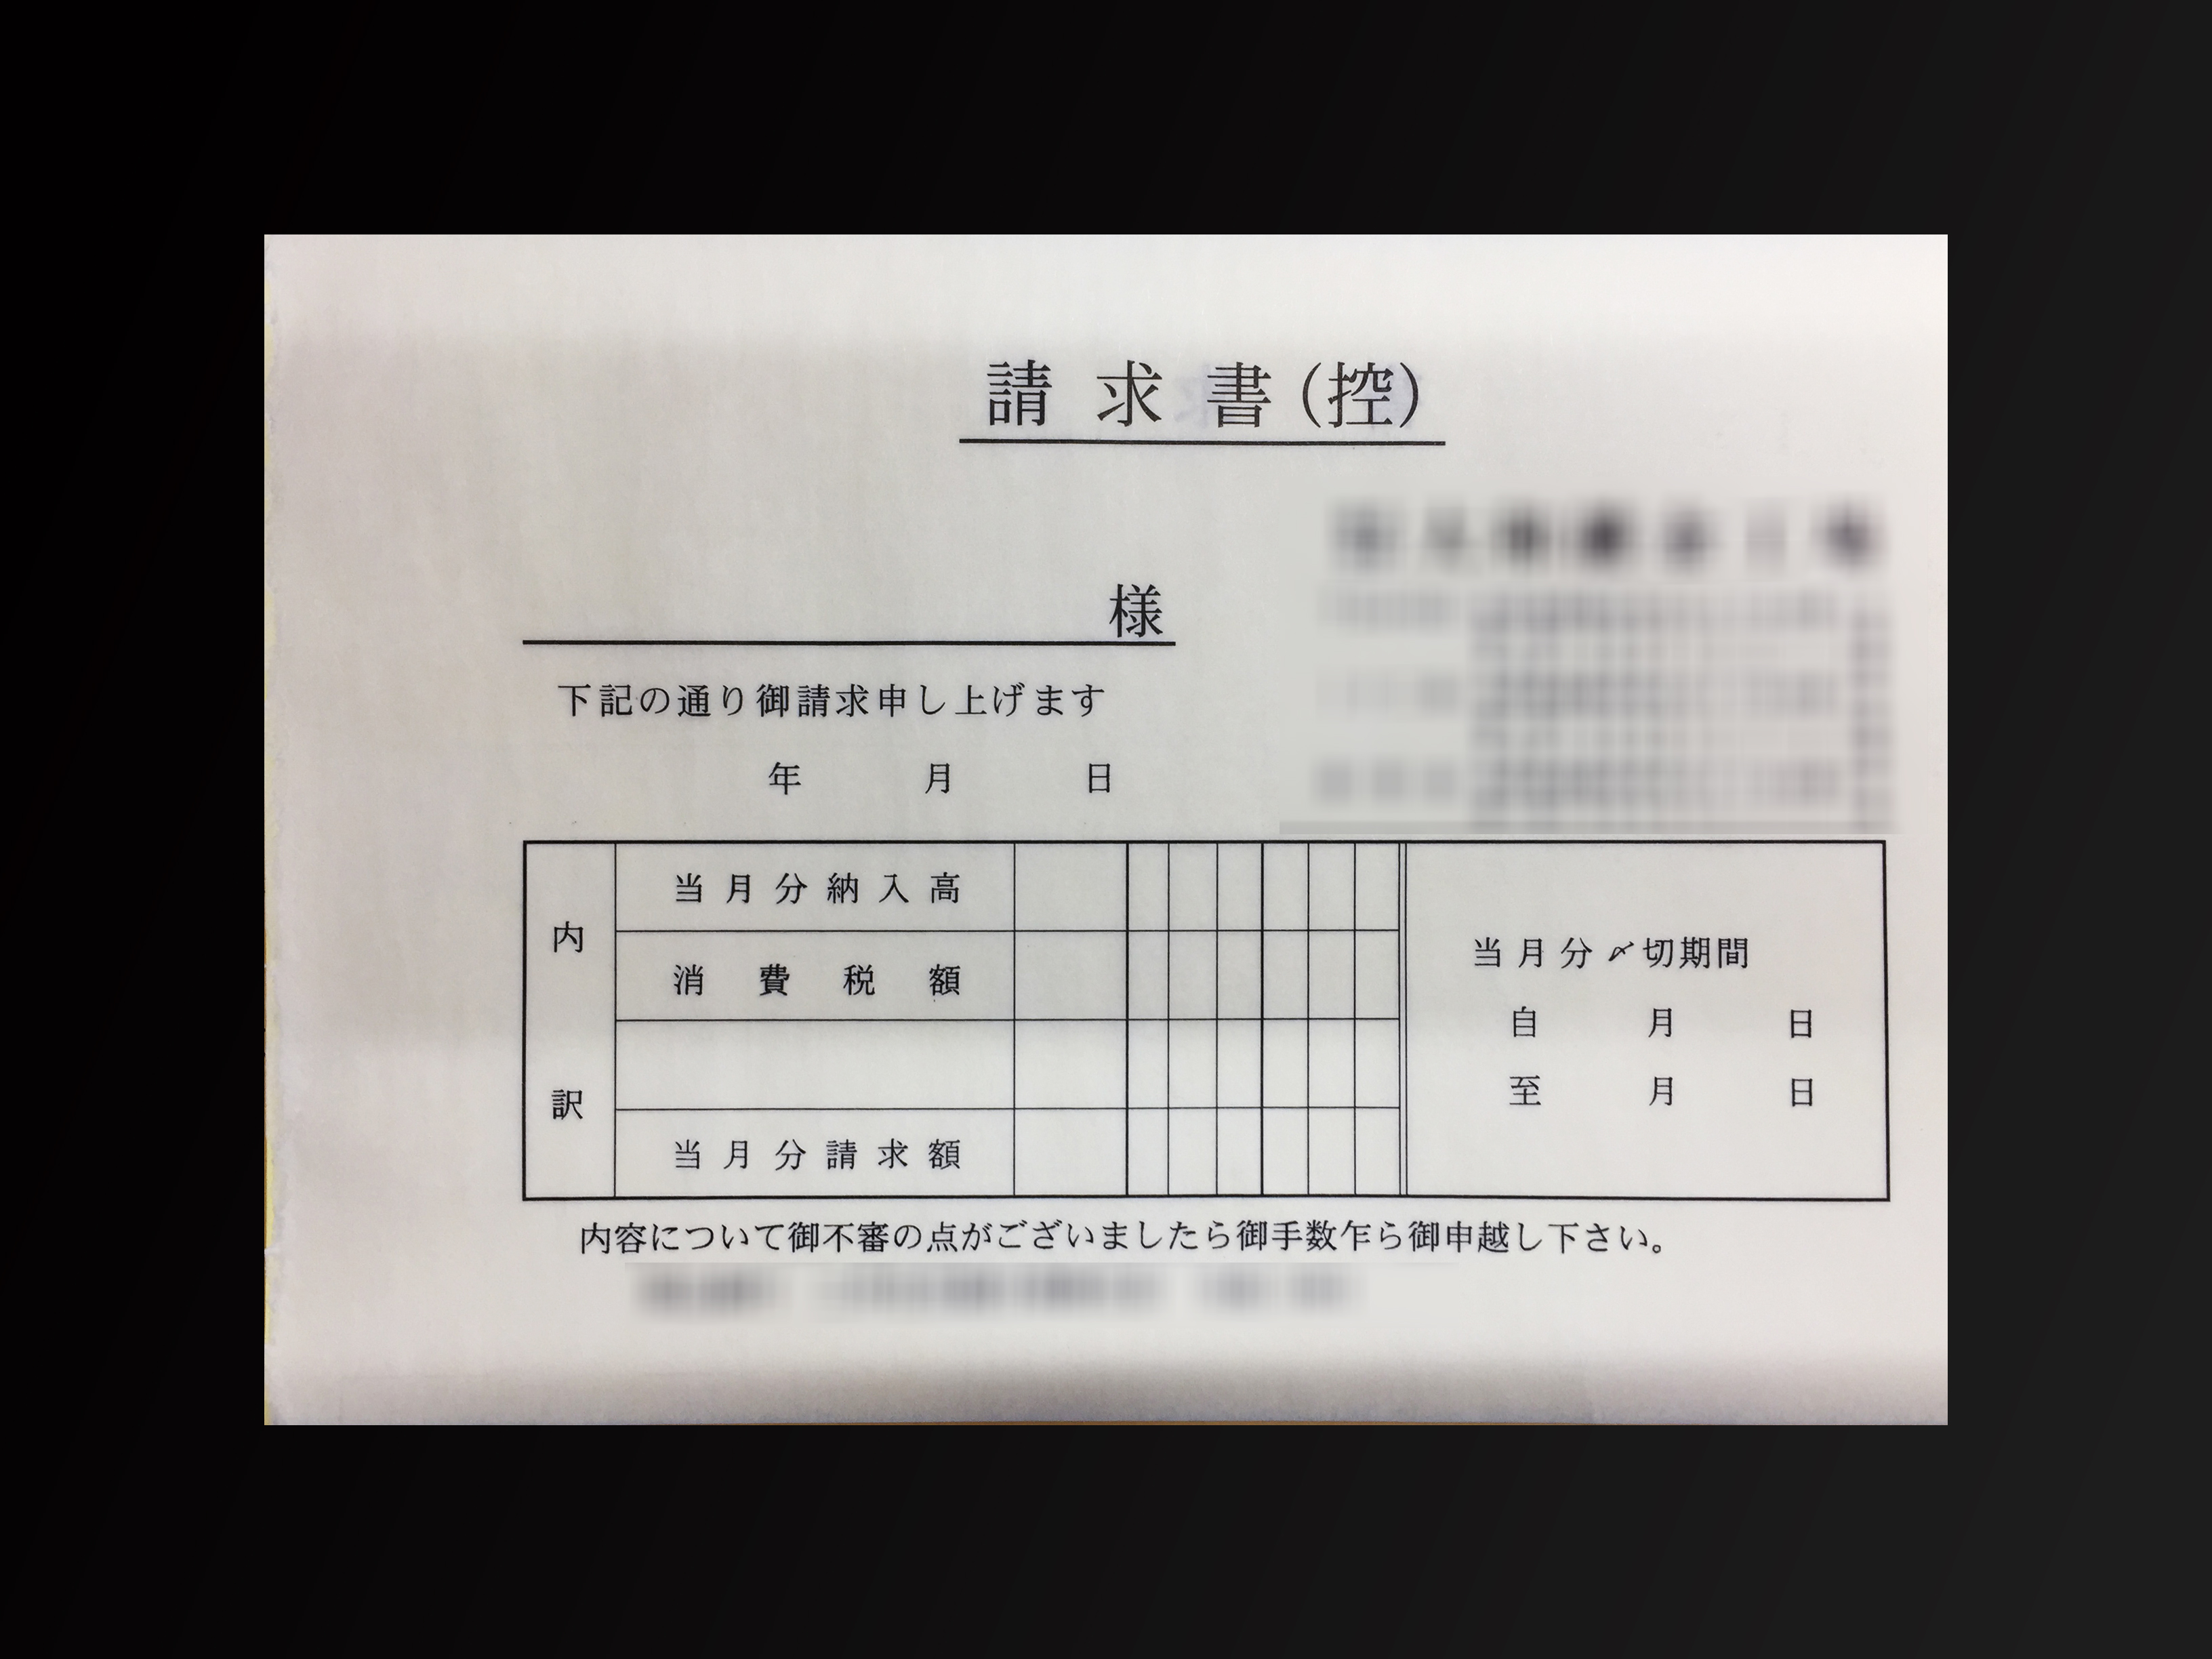 製造業で使用する合計請求書(2枚複写)の伝票作成実績